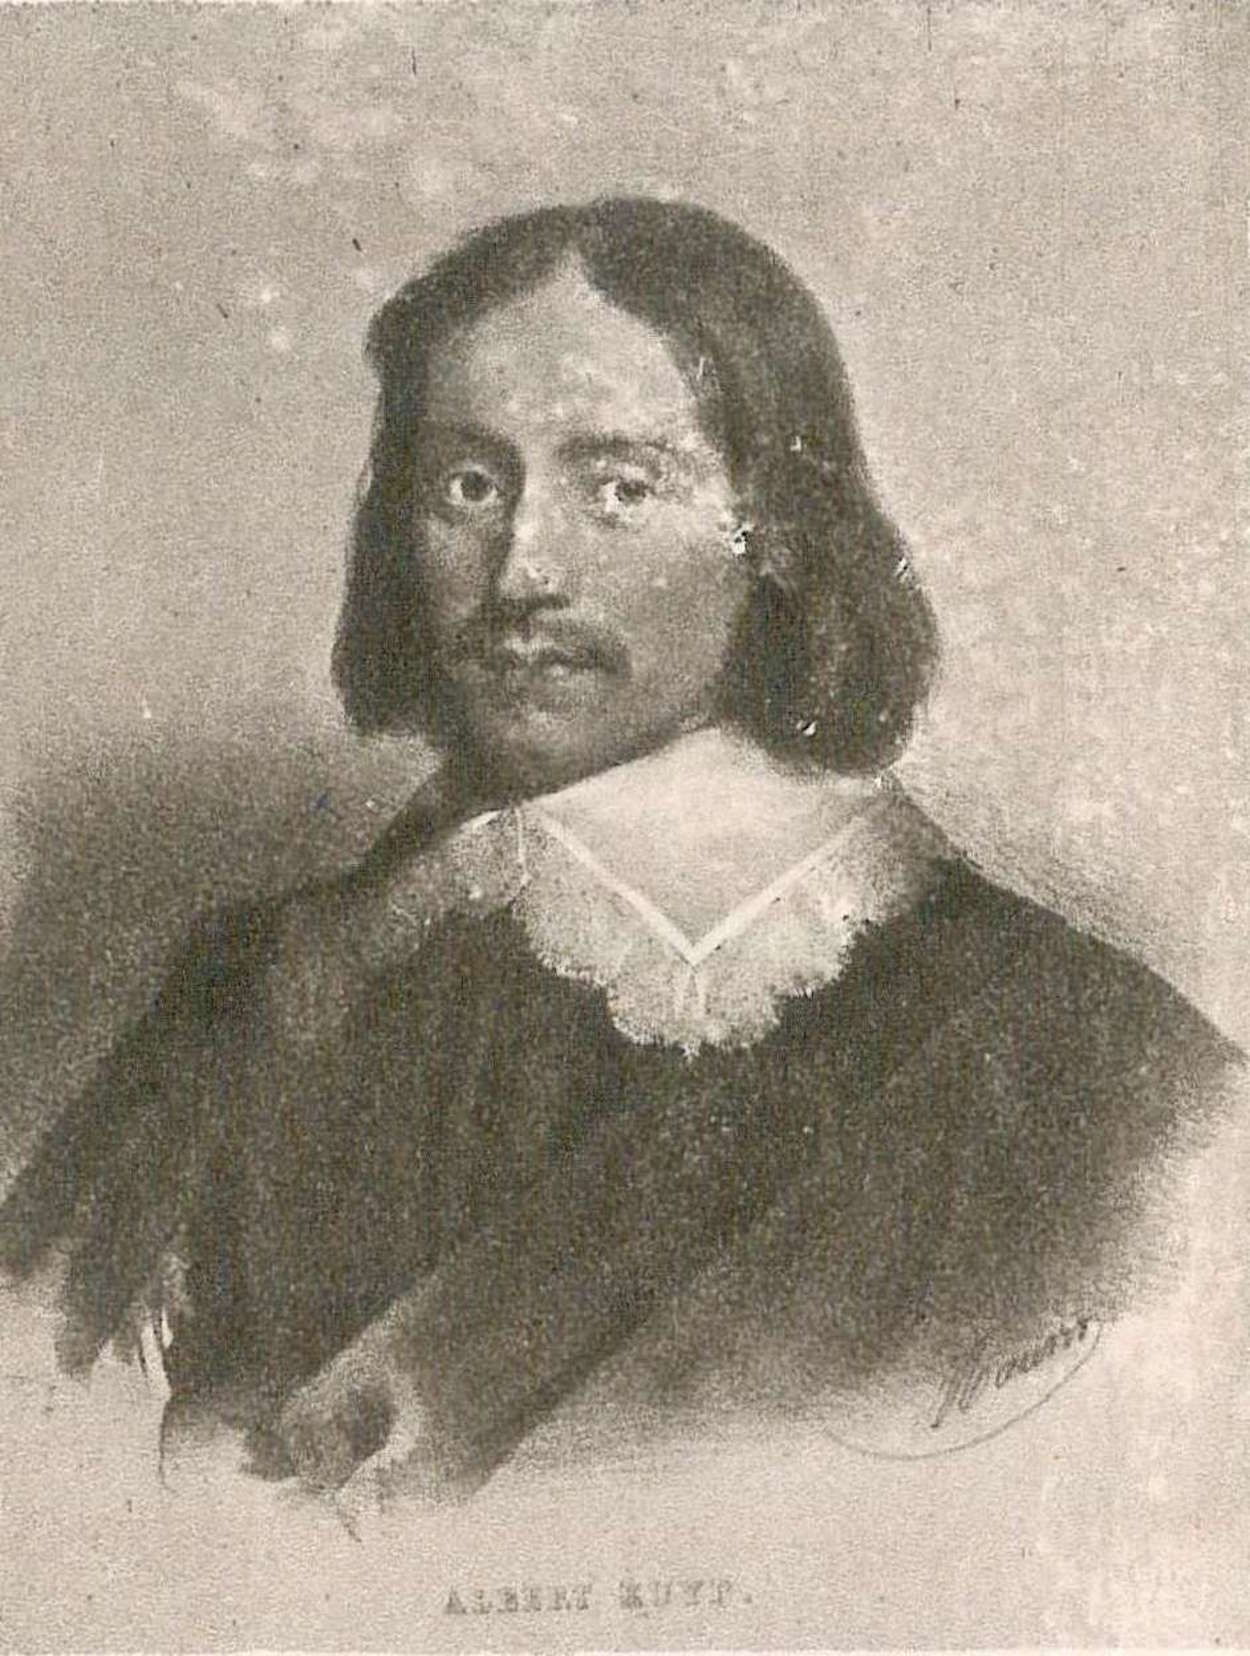 Έλμπερτ Κόυπ - 20 Οκτωβρίου 1620 - 15 Νοεμβρίου 1691